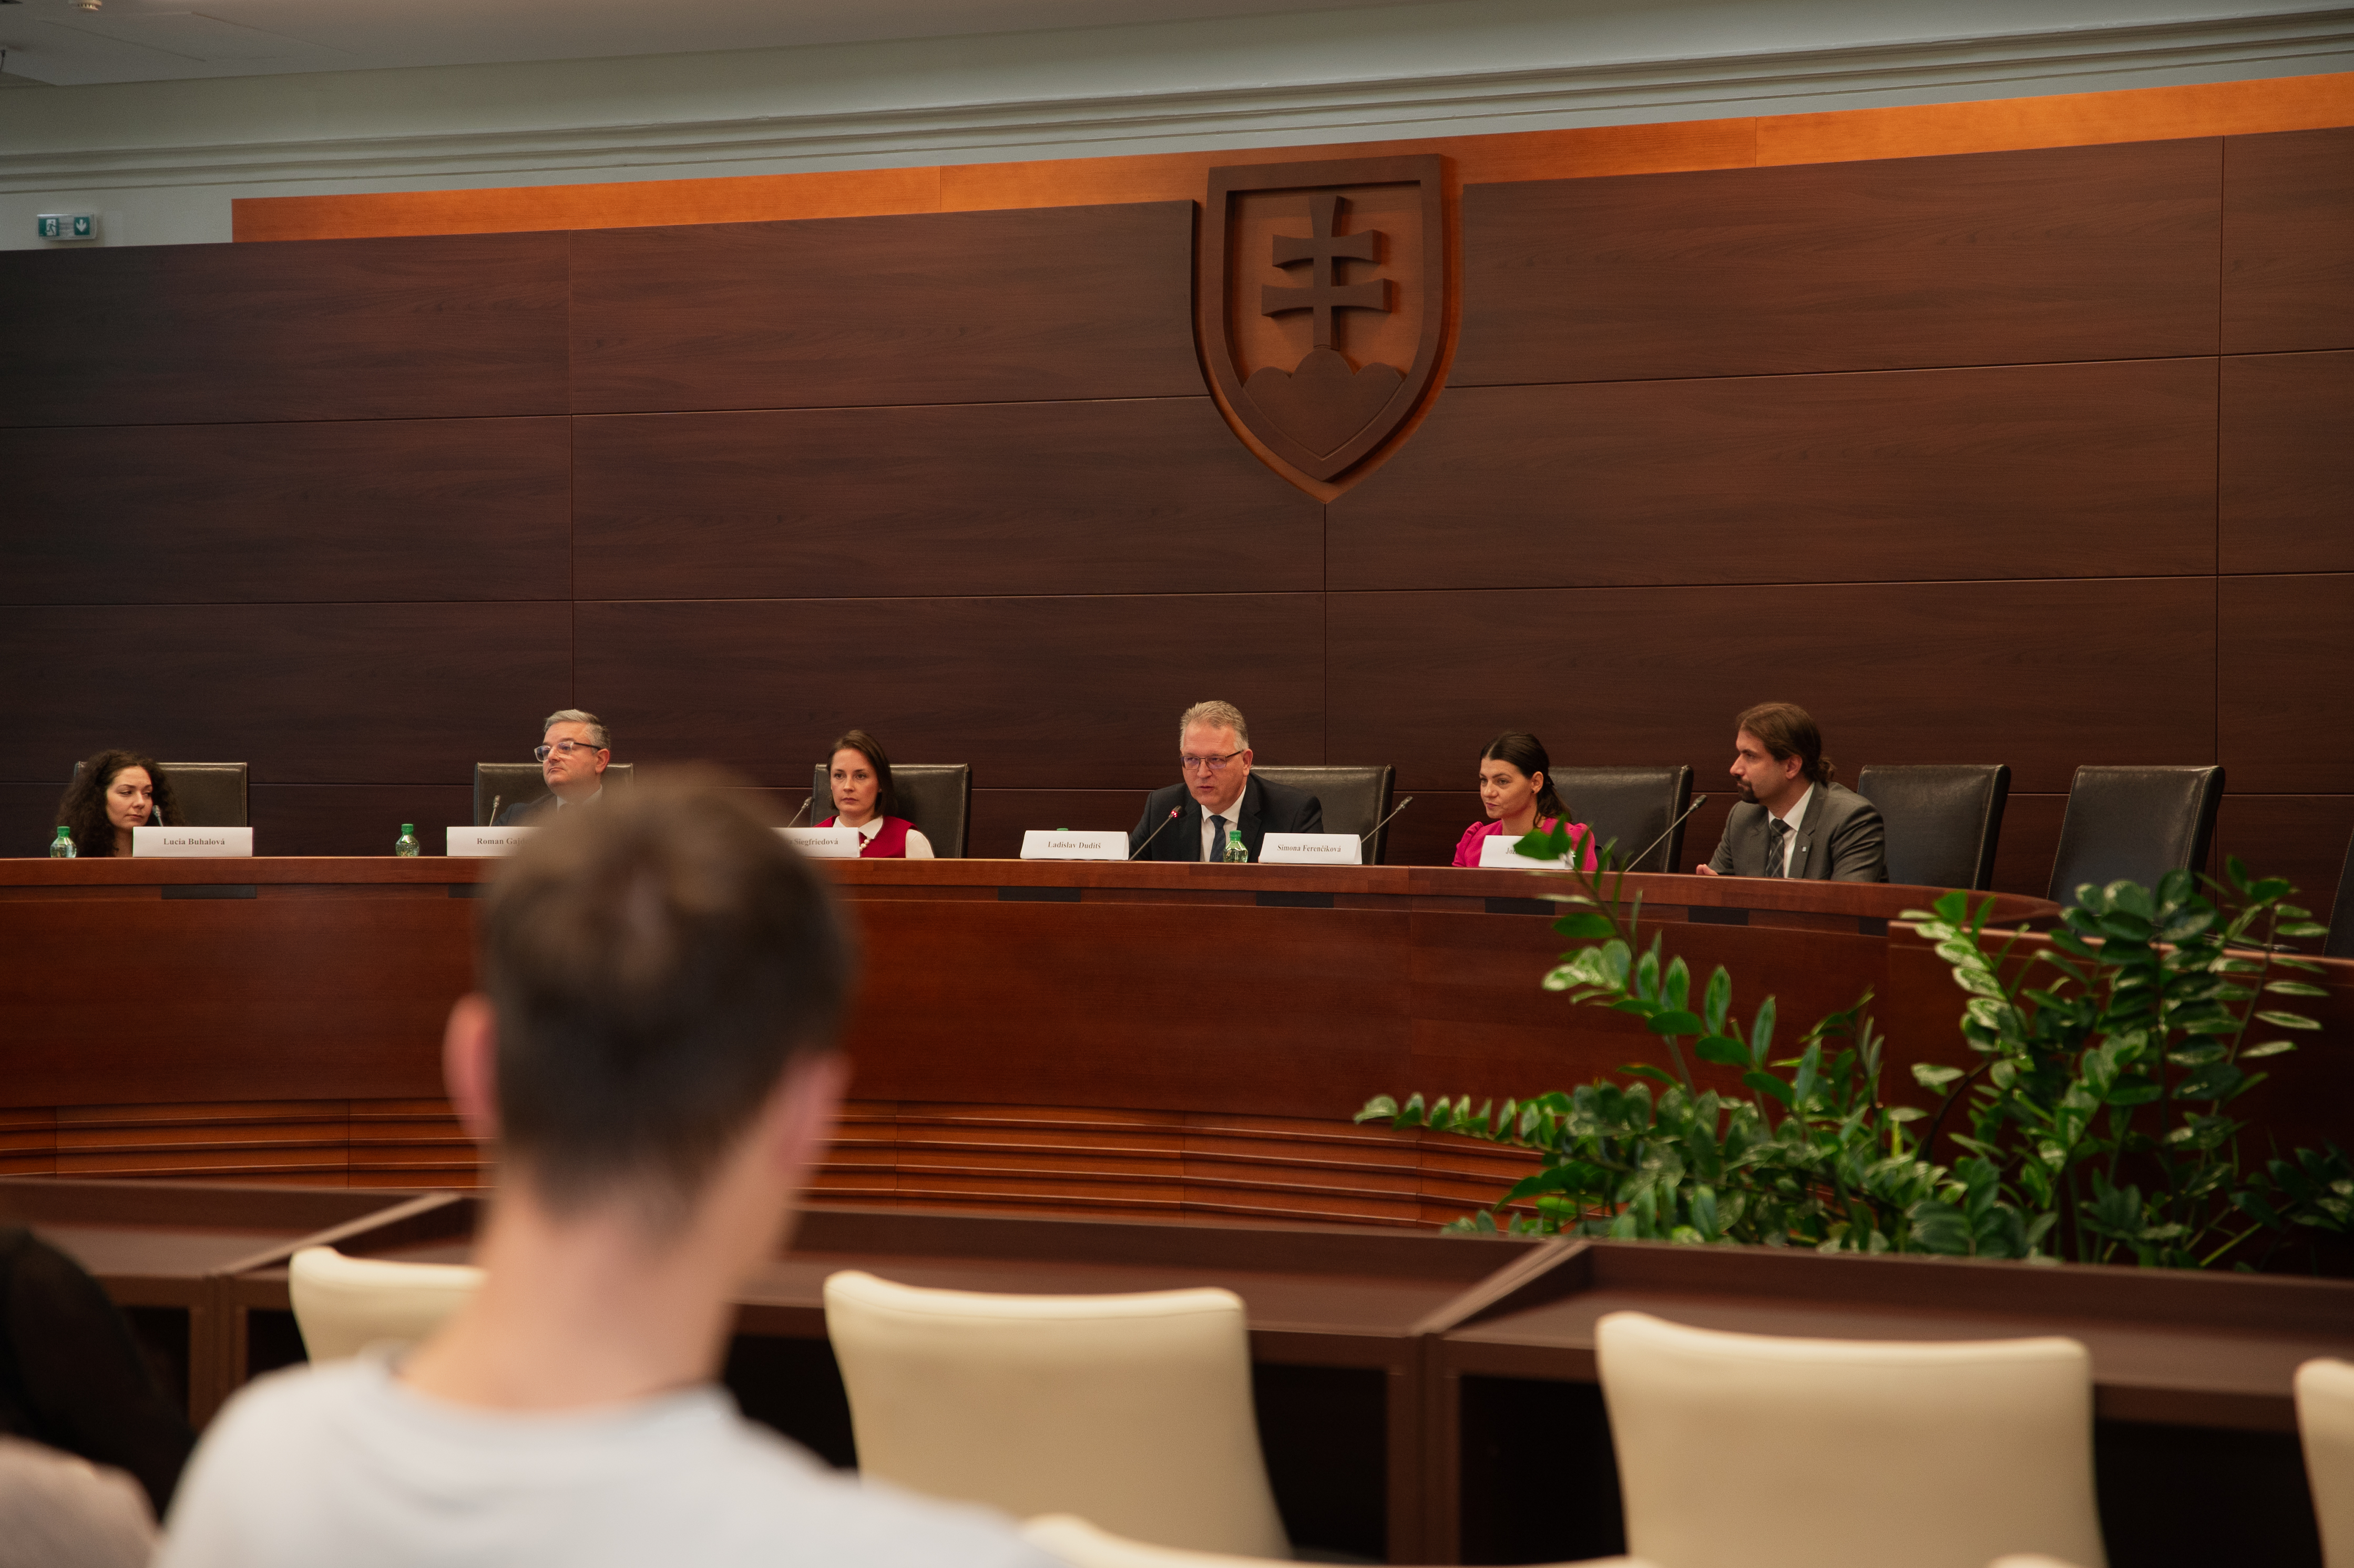 Obrázok Ústavný súd Slovenskej republiky navštívili aktuálni a budúci študenti Univerzity Pavla Jozefa Šafárika v Košiciach